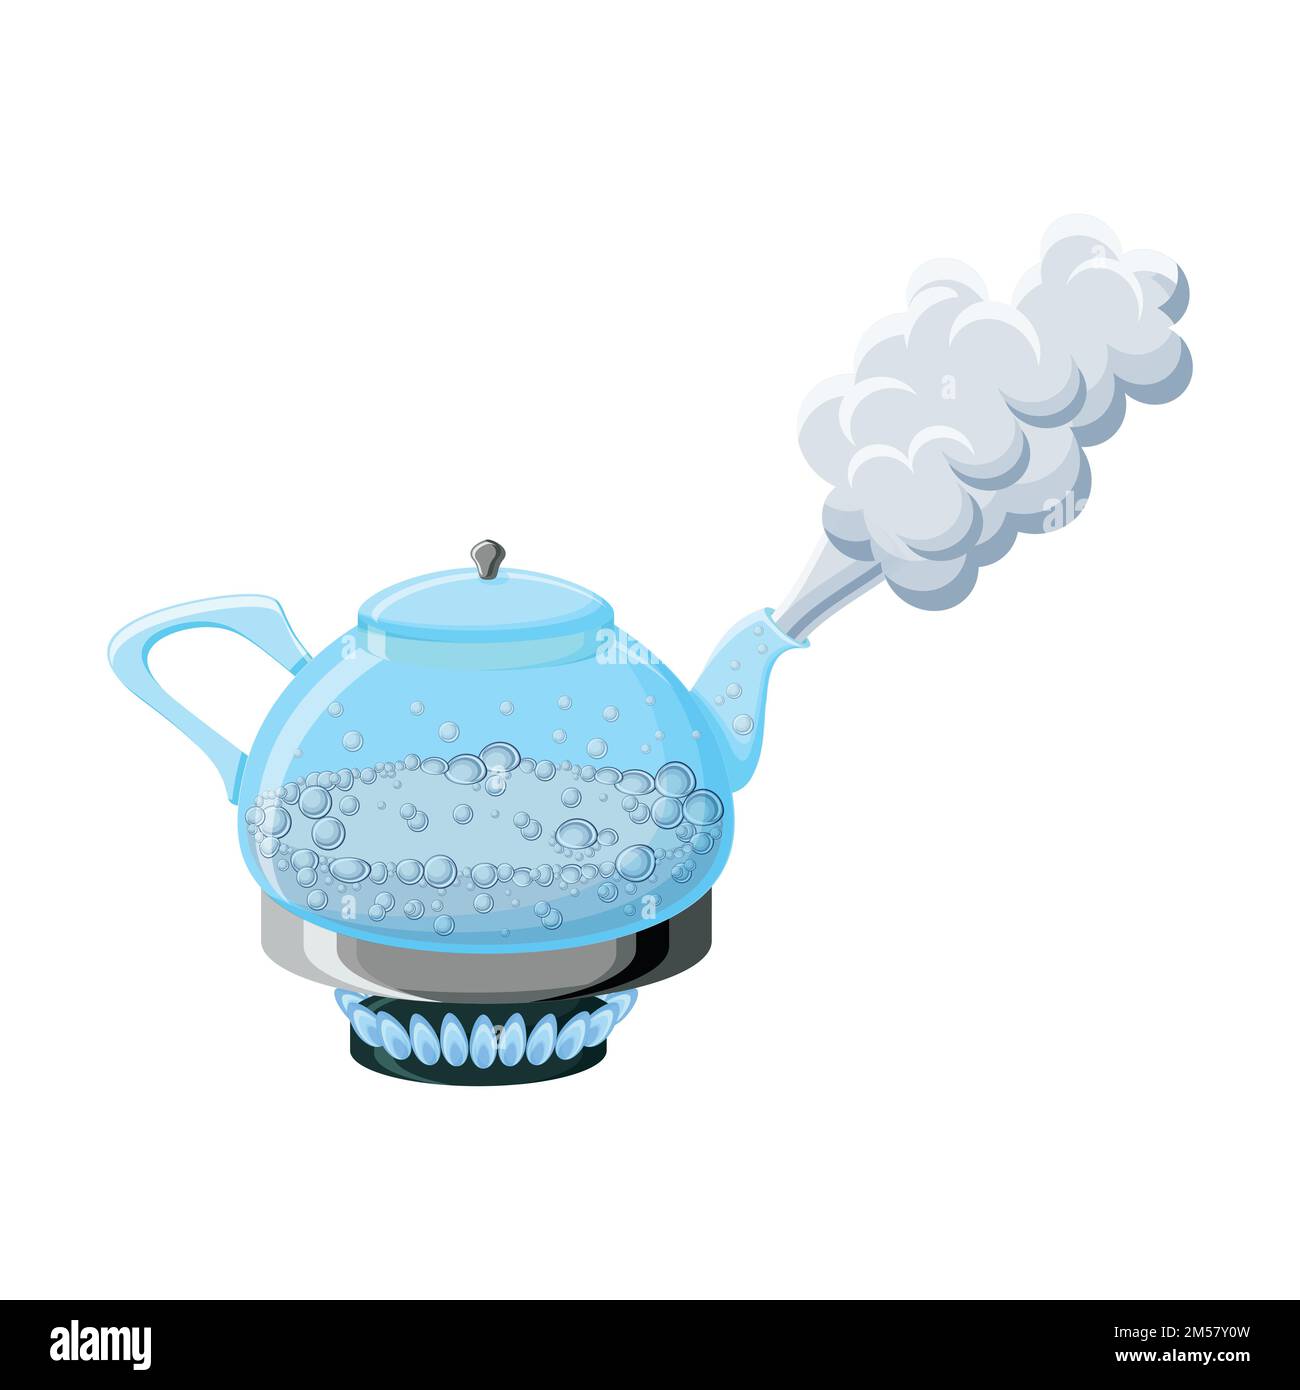 Wasserkocher aus transparentem Glas mit kochendem Wasser und Dampf auf einem Gasherd, isoliert auf weißem Hintergrund. Cartoon-Vektordarstellung im flachen Stil. Stock Vektor